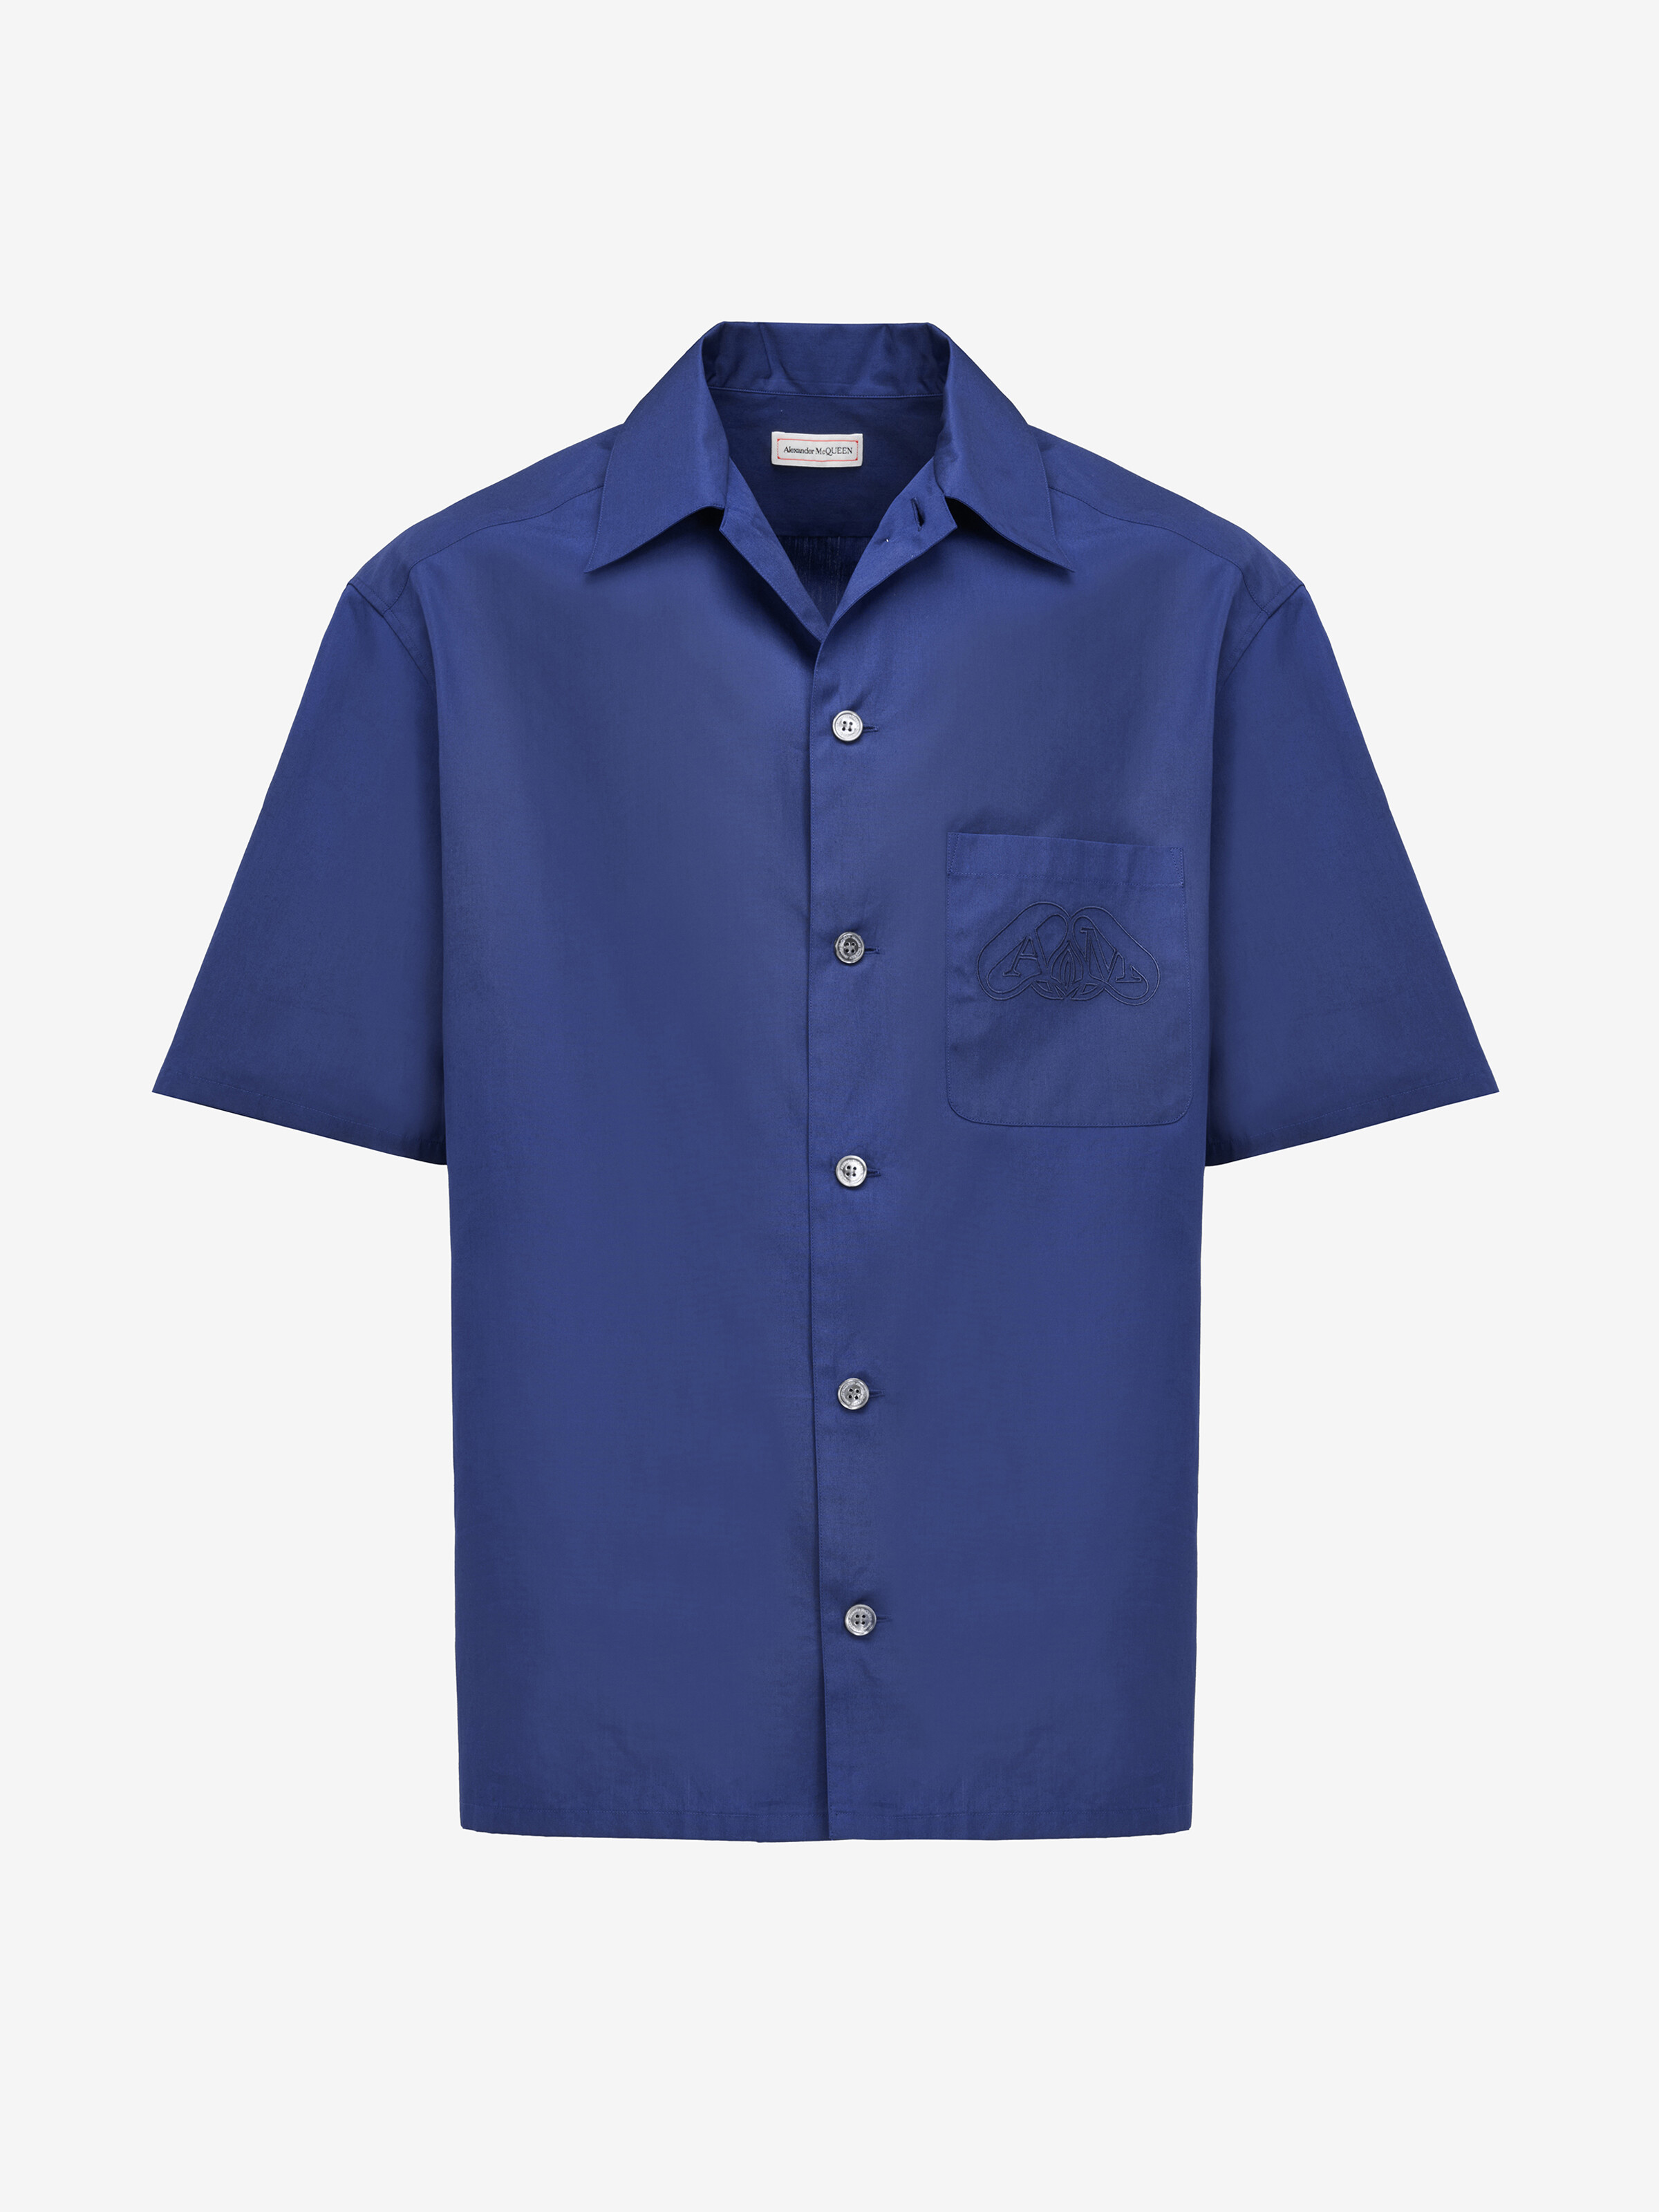 Seal Logo Bowling Shirt in Indigo | Alexander McQueen US